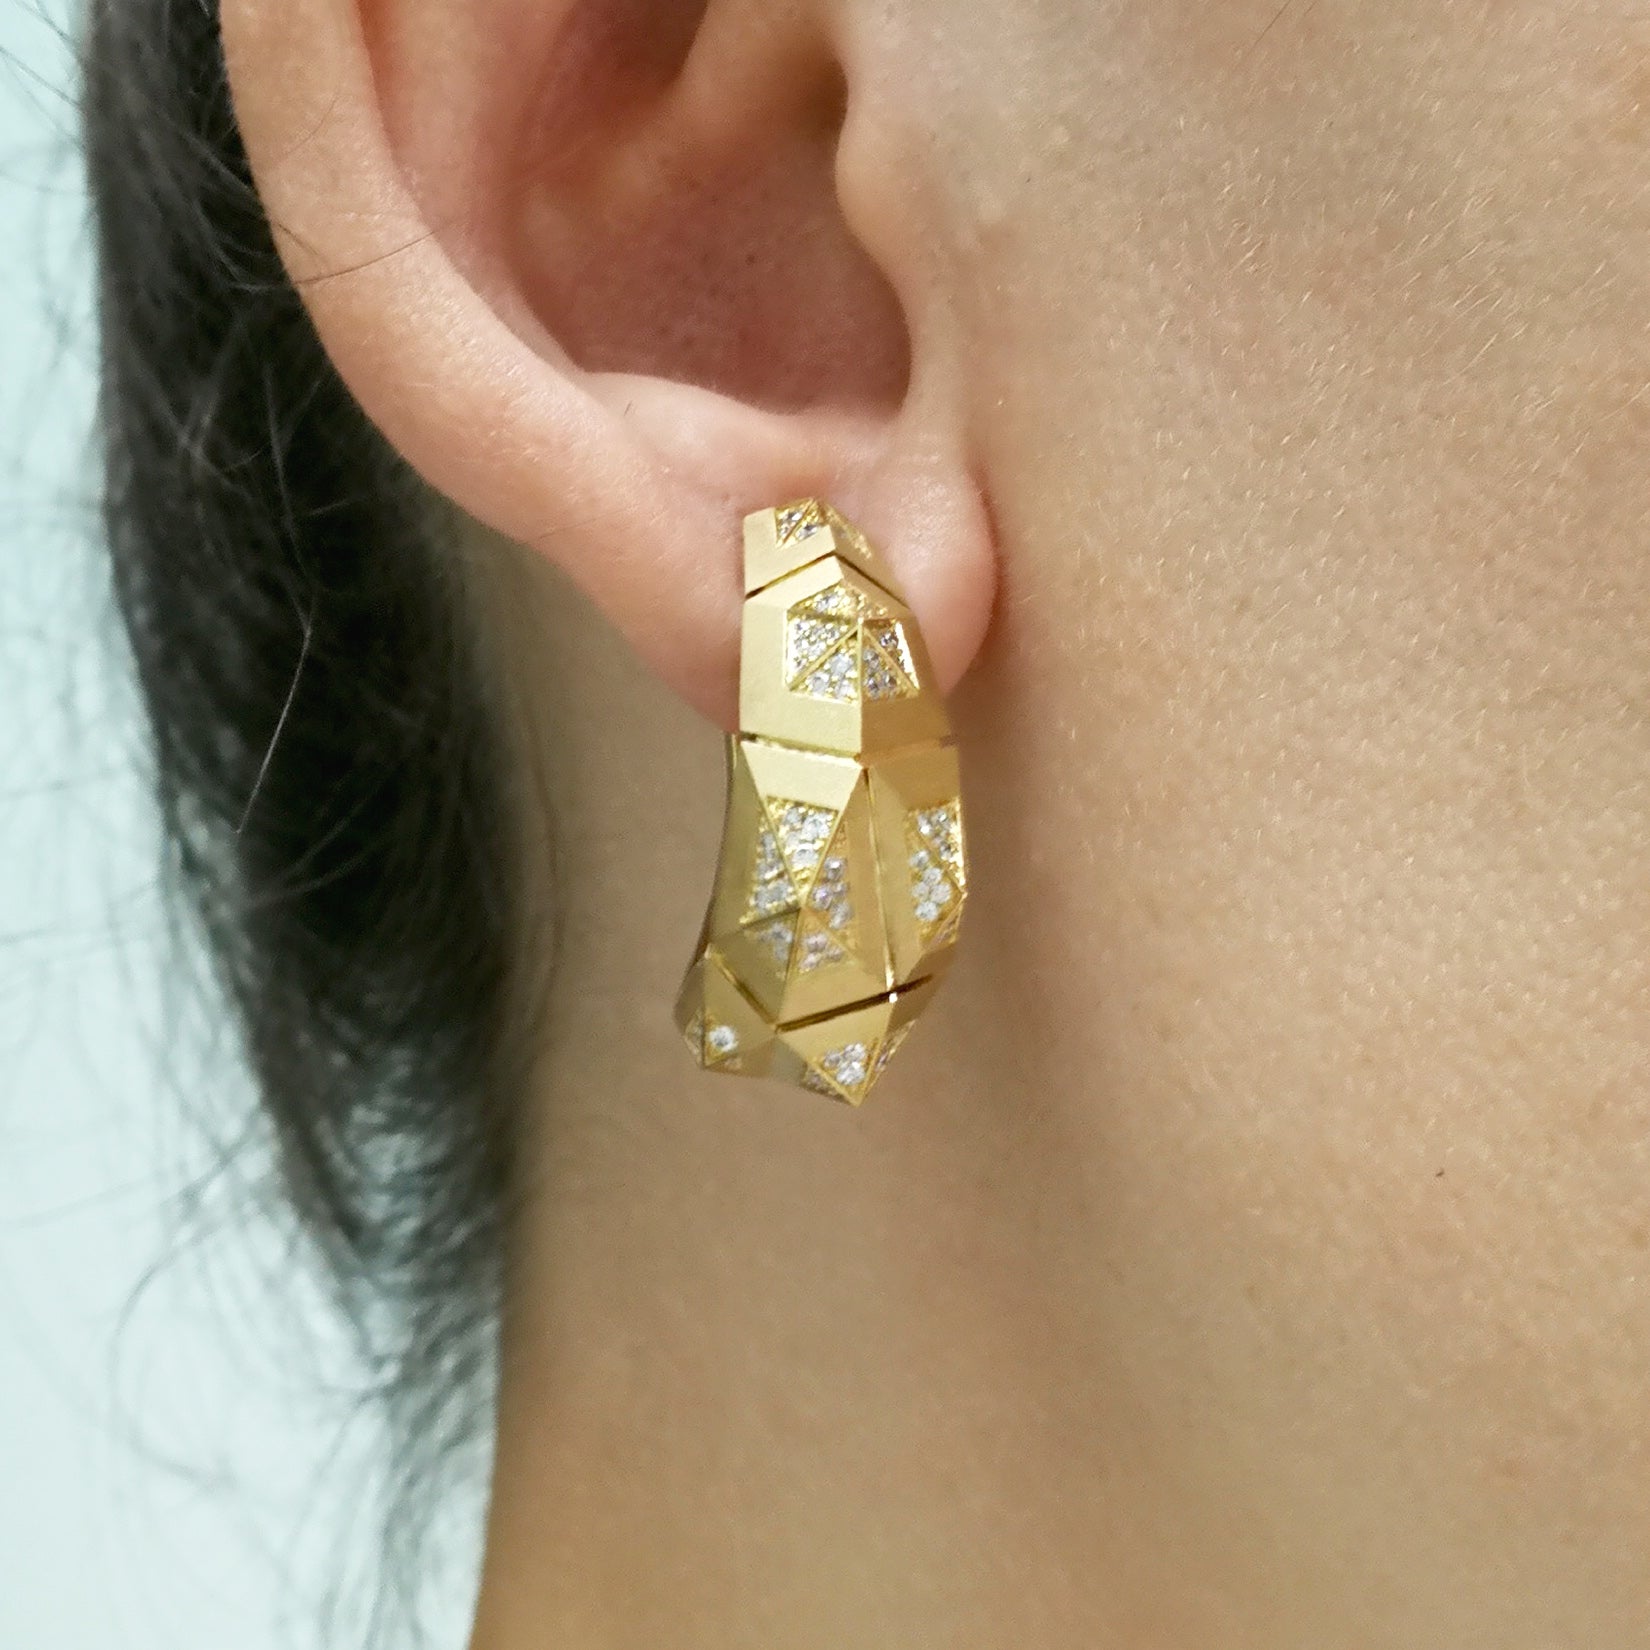 E 0191-4, 18K Yellow Gold, Diamonds Earrings